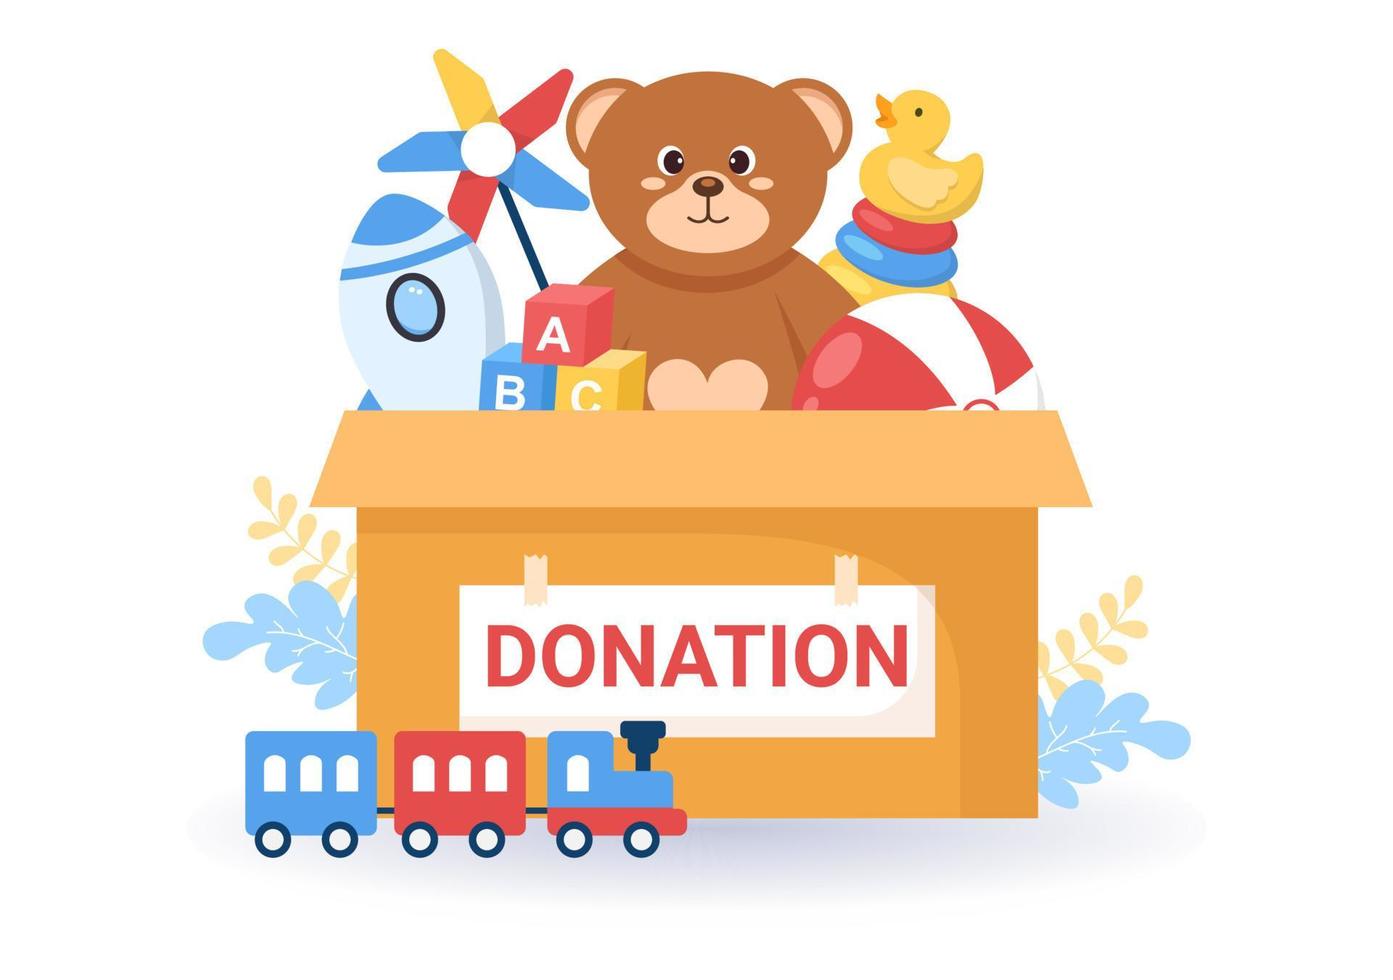 caixa de doação de papelão contendo brinquedos para crianças, assistência social, voluntariado e caridade na ilustração plana dos desenhos animados desenhados à mão vetor